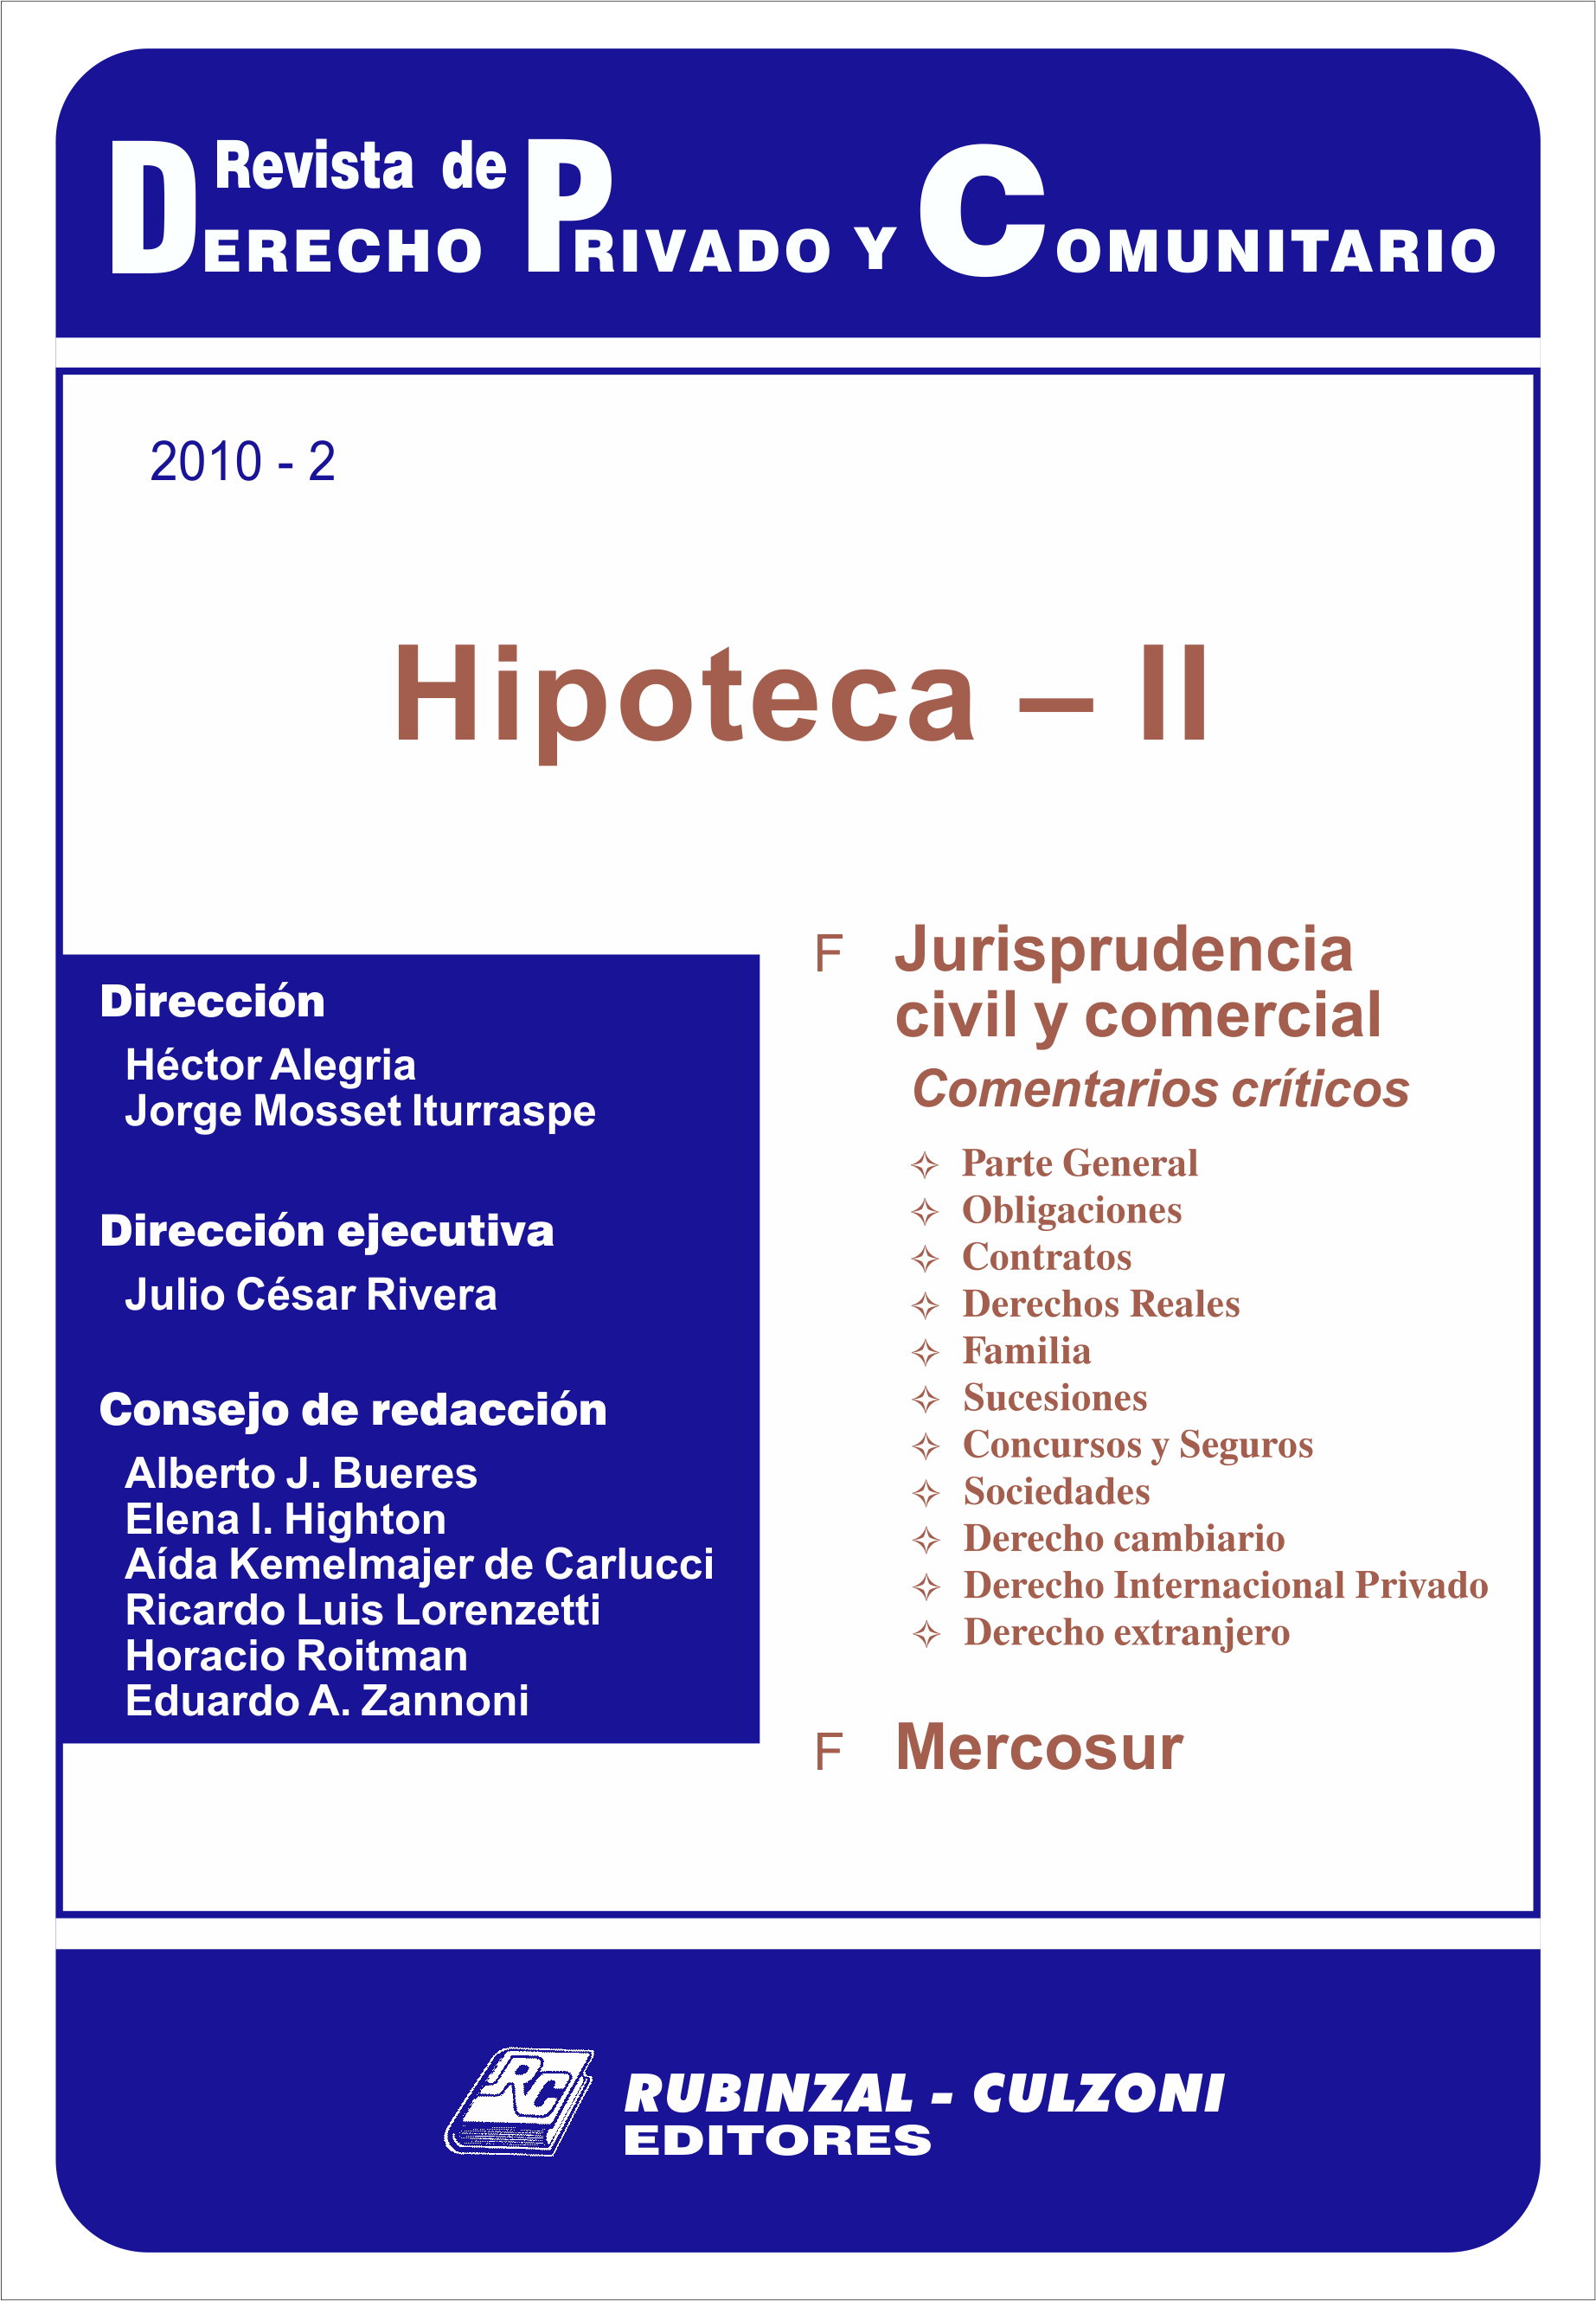 Revista de Derecho Privado y Comunitario - Hipoteca - II.